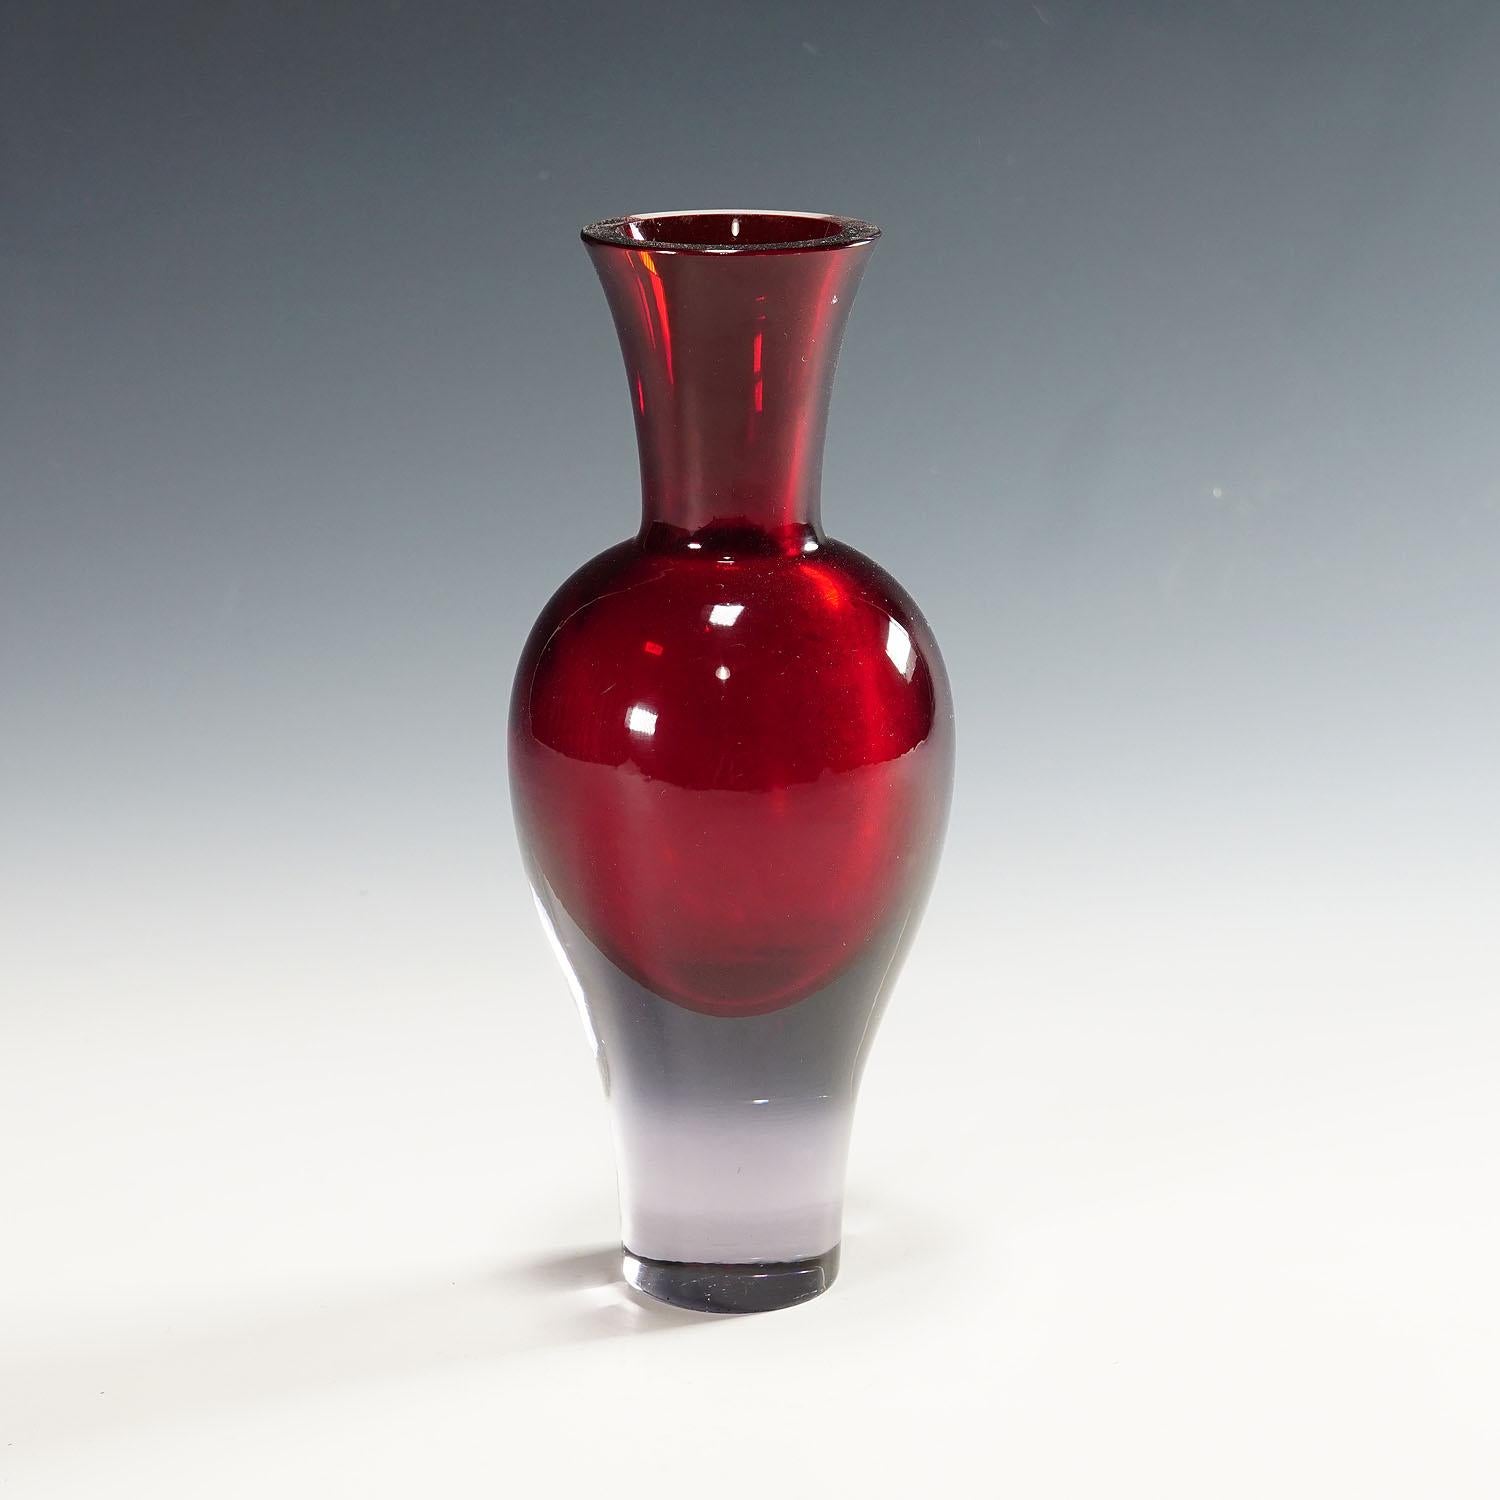 Seguso Vetri d'Arte Murano Sommerso Glasvase, 1960er Jahre.

Eine Vase aus Murano sommerso Kunstglas. Entworfen von Flavio Poli und hergestellt von Seguso Vetri d'Arte in den 1960er Jahren. Gefertigt aus dickem violettem Glas mit rubinroter Einlage.